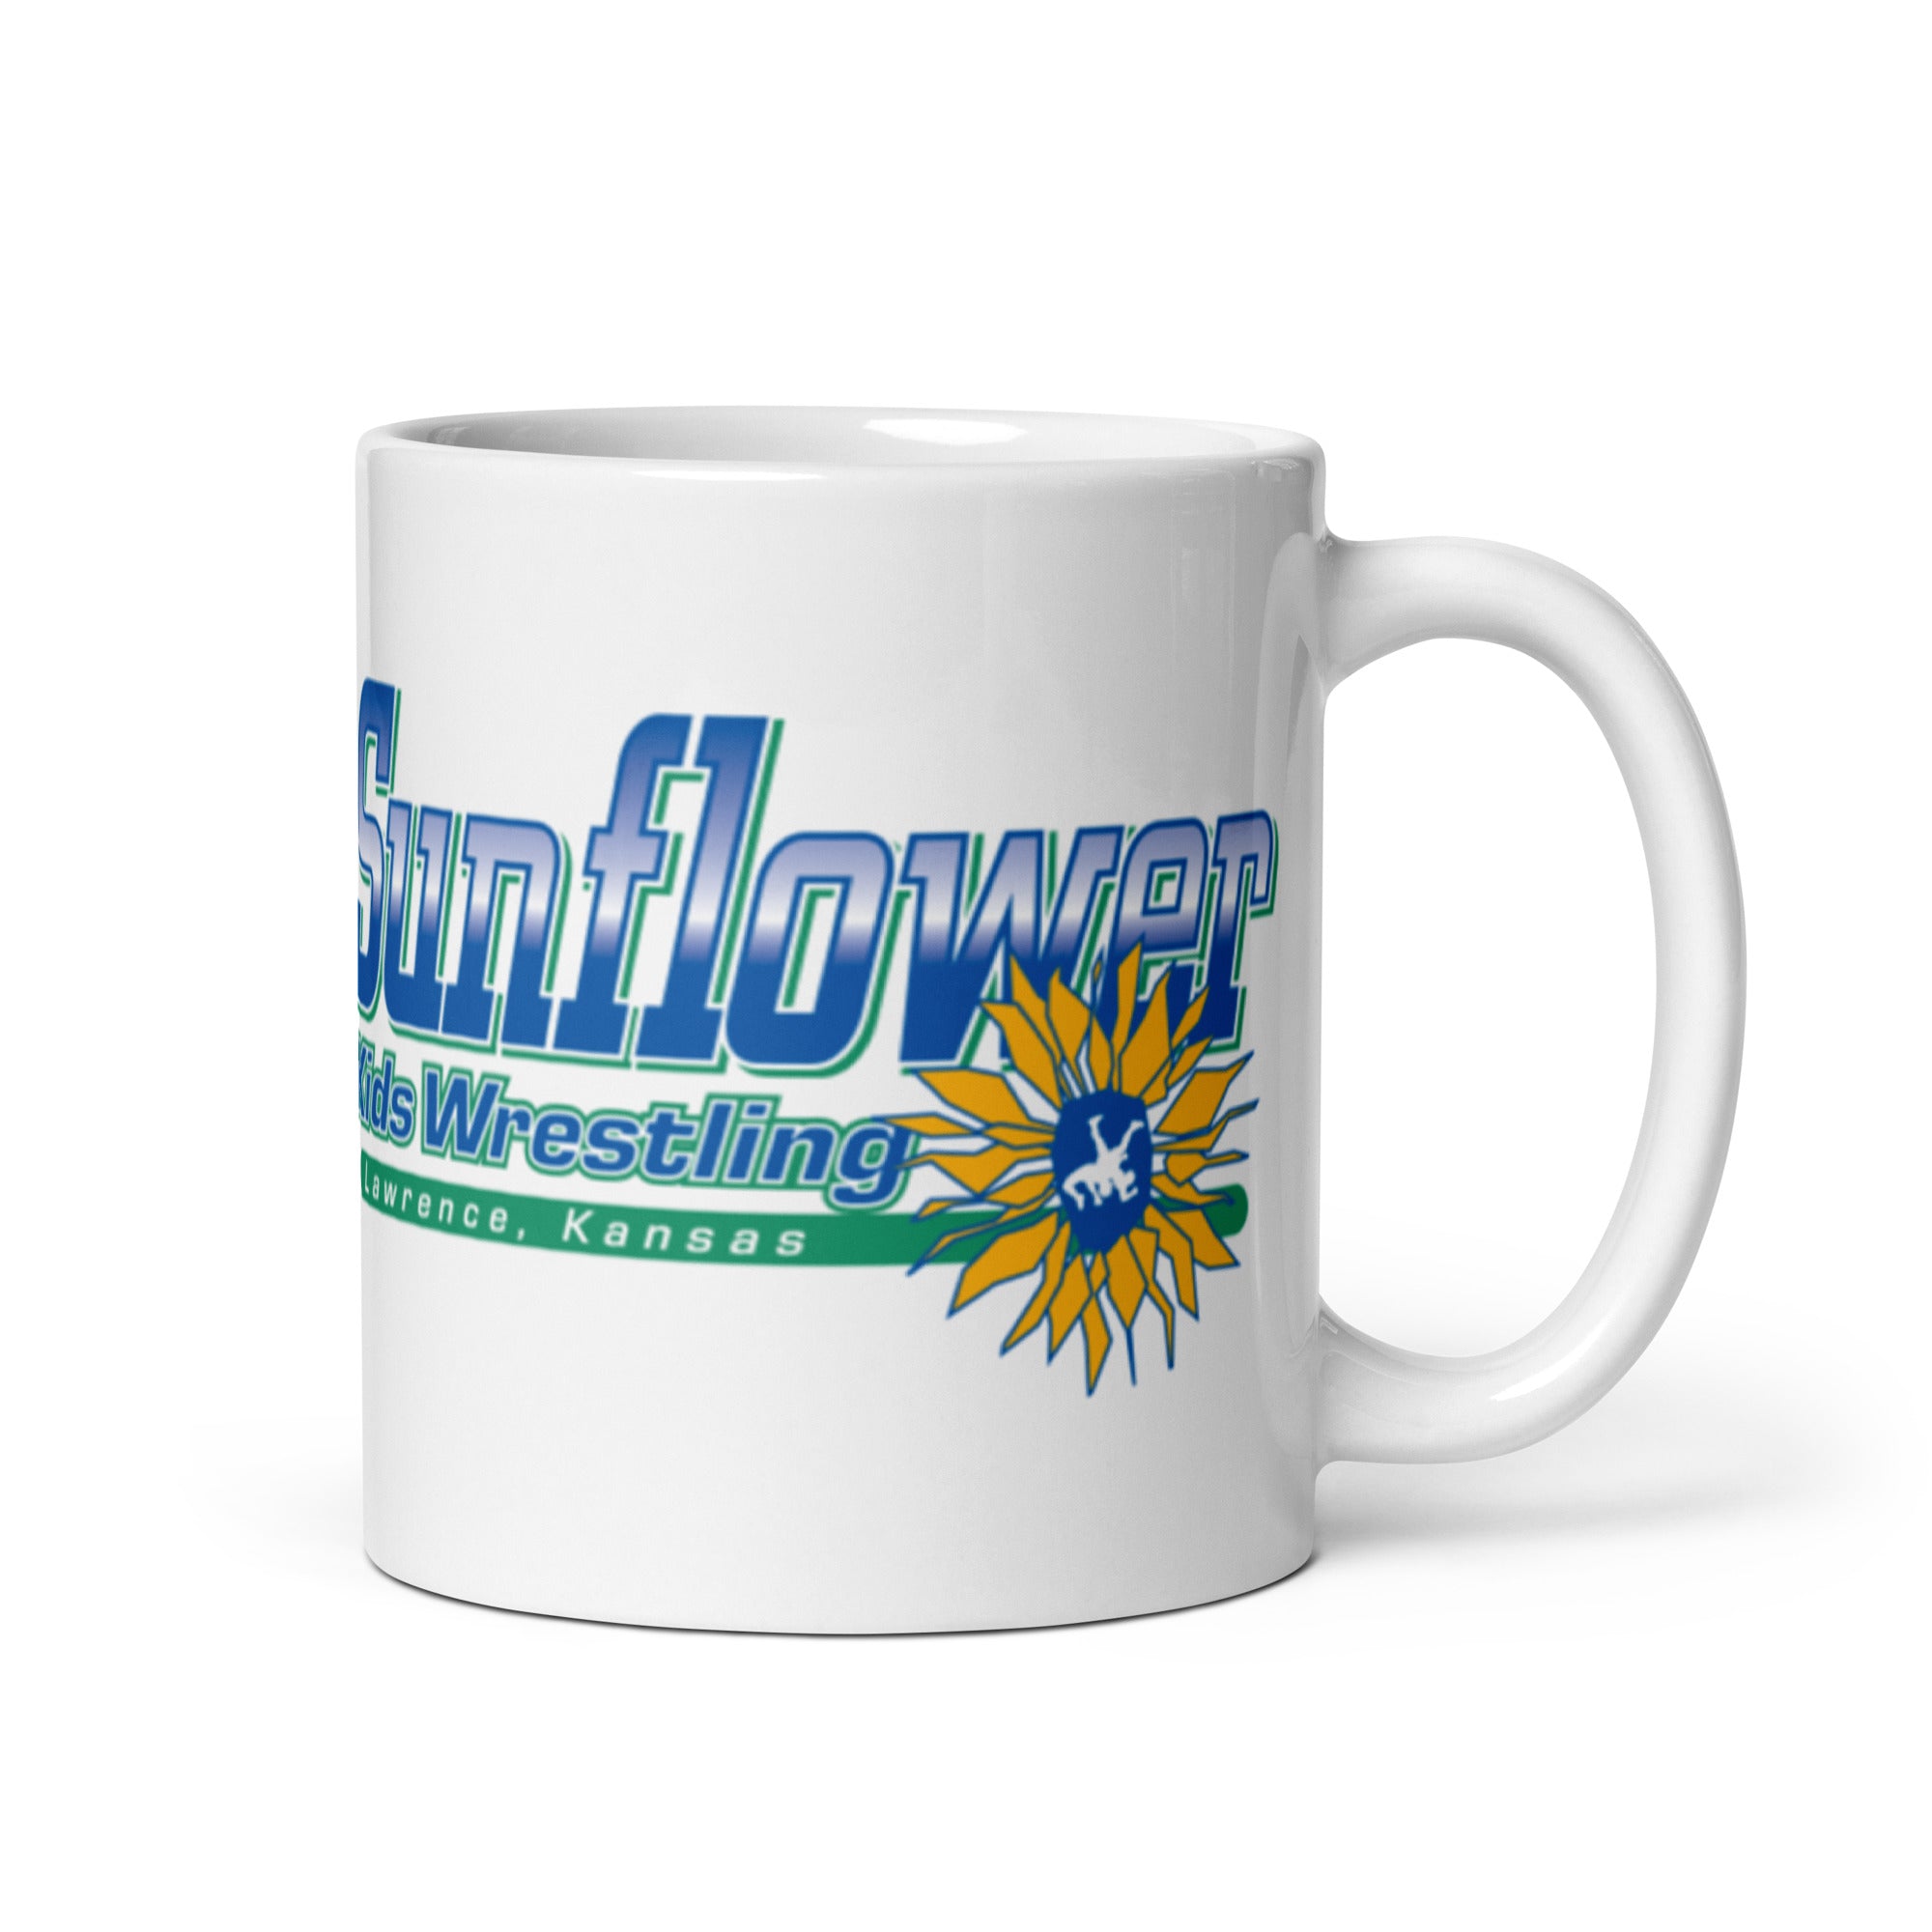 Sunflower Kids Wrestling Club Lawrence, KS White Glossy Mug